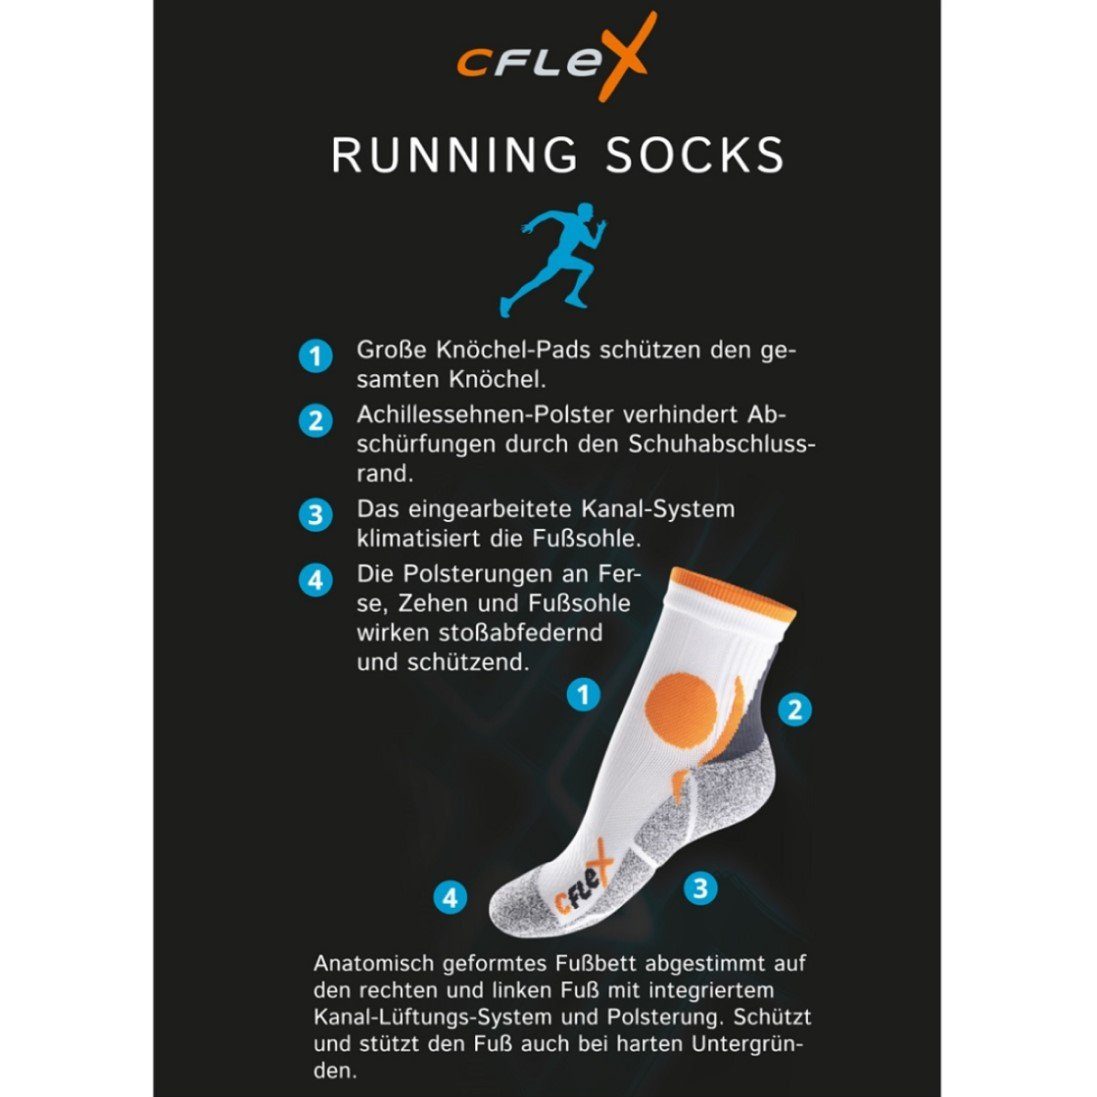 CFLEX Damen und Funktions-Socken Laufsocken Running (4 Paar) Herren Sportsocken Weiss/Orange